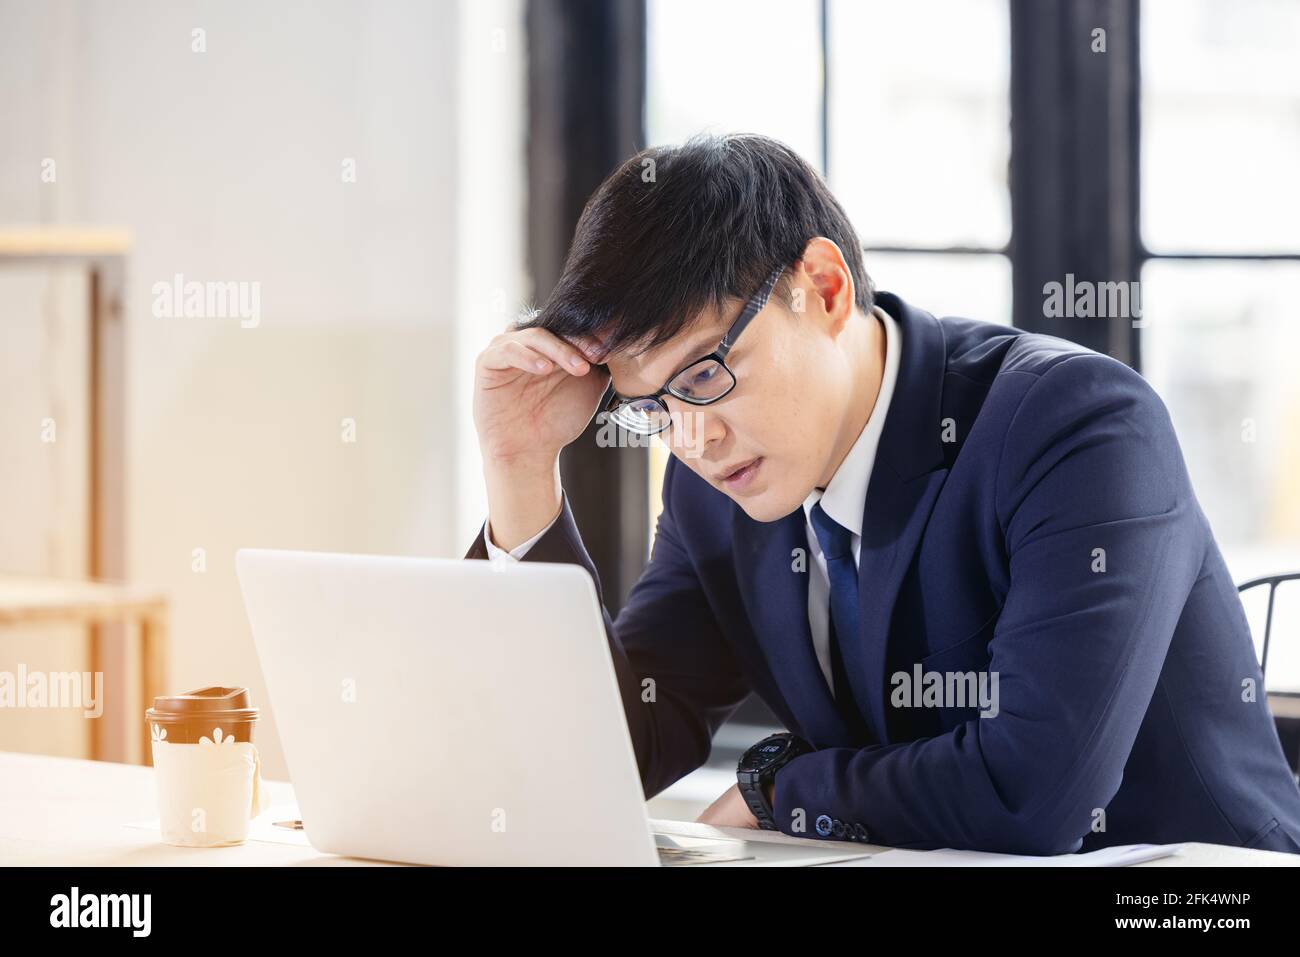 Besorgt und enttäuscht Remote online arbeitenden Mann in lässigem Outfit Mit Laptop sitzt in einem Coworking / Home Office bei Ein Schreibtisch Stockfoto